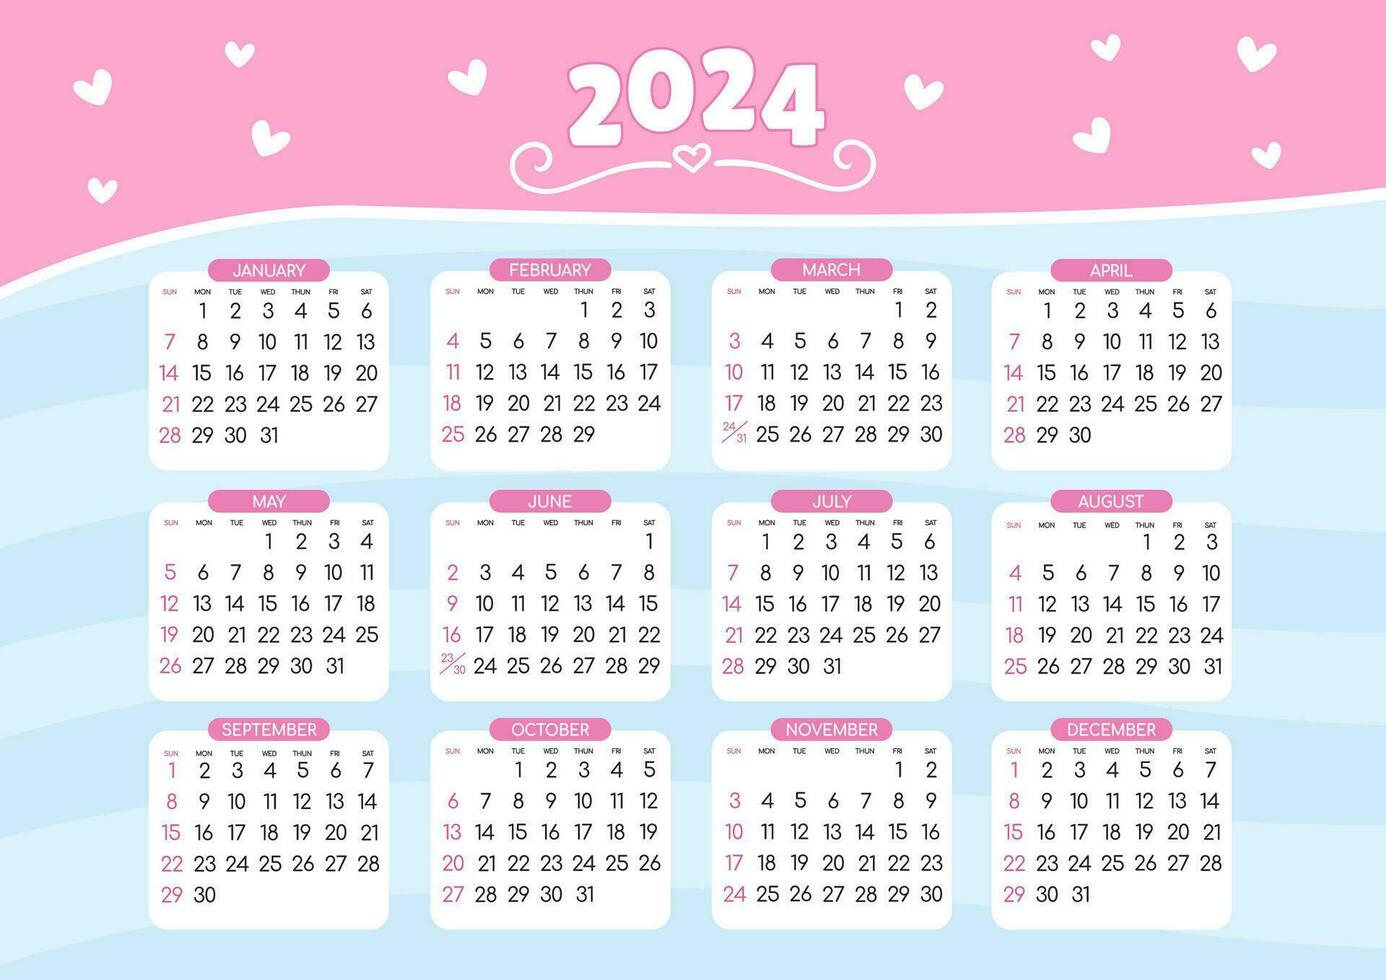 Calendar 2024 - All months vector